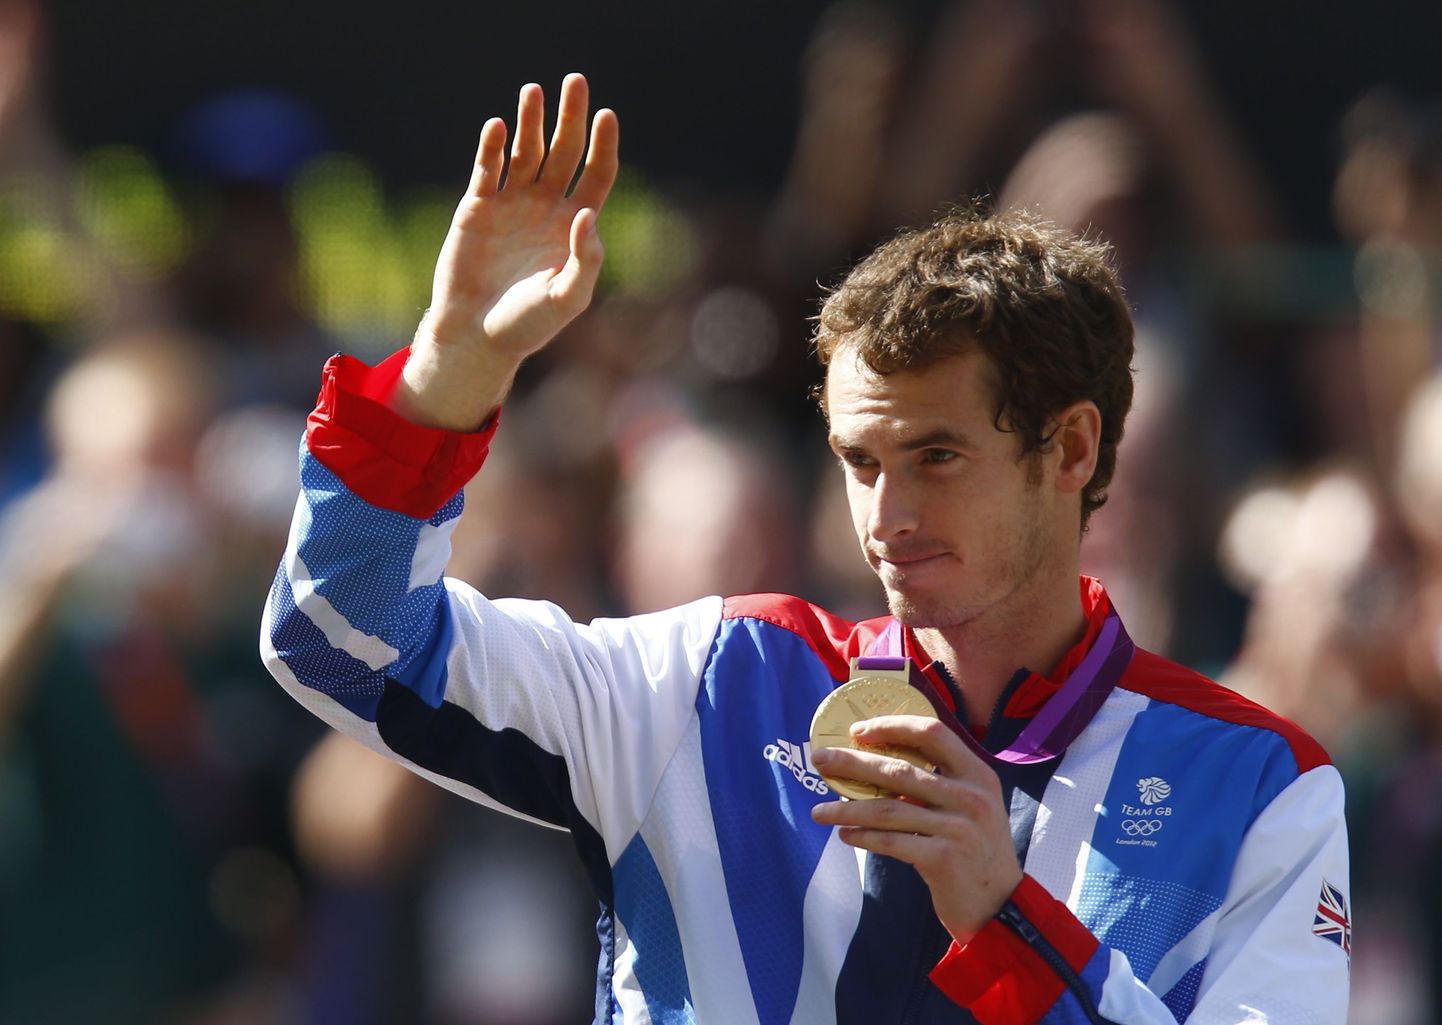 Andy Murray on saanud kaela kuldse medali.